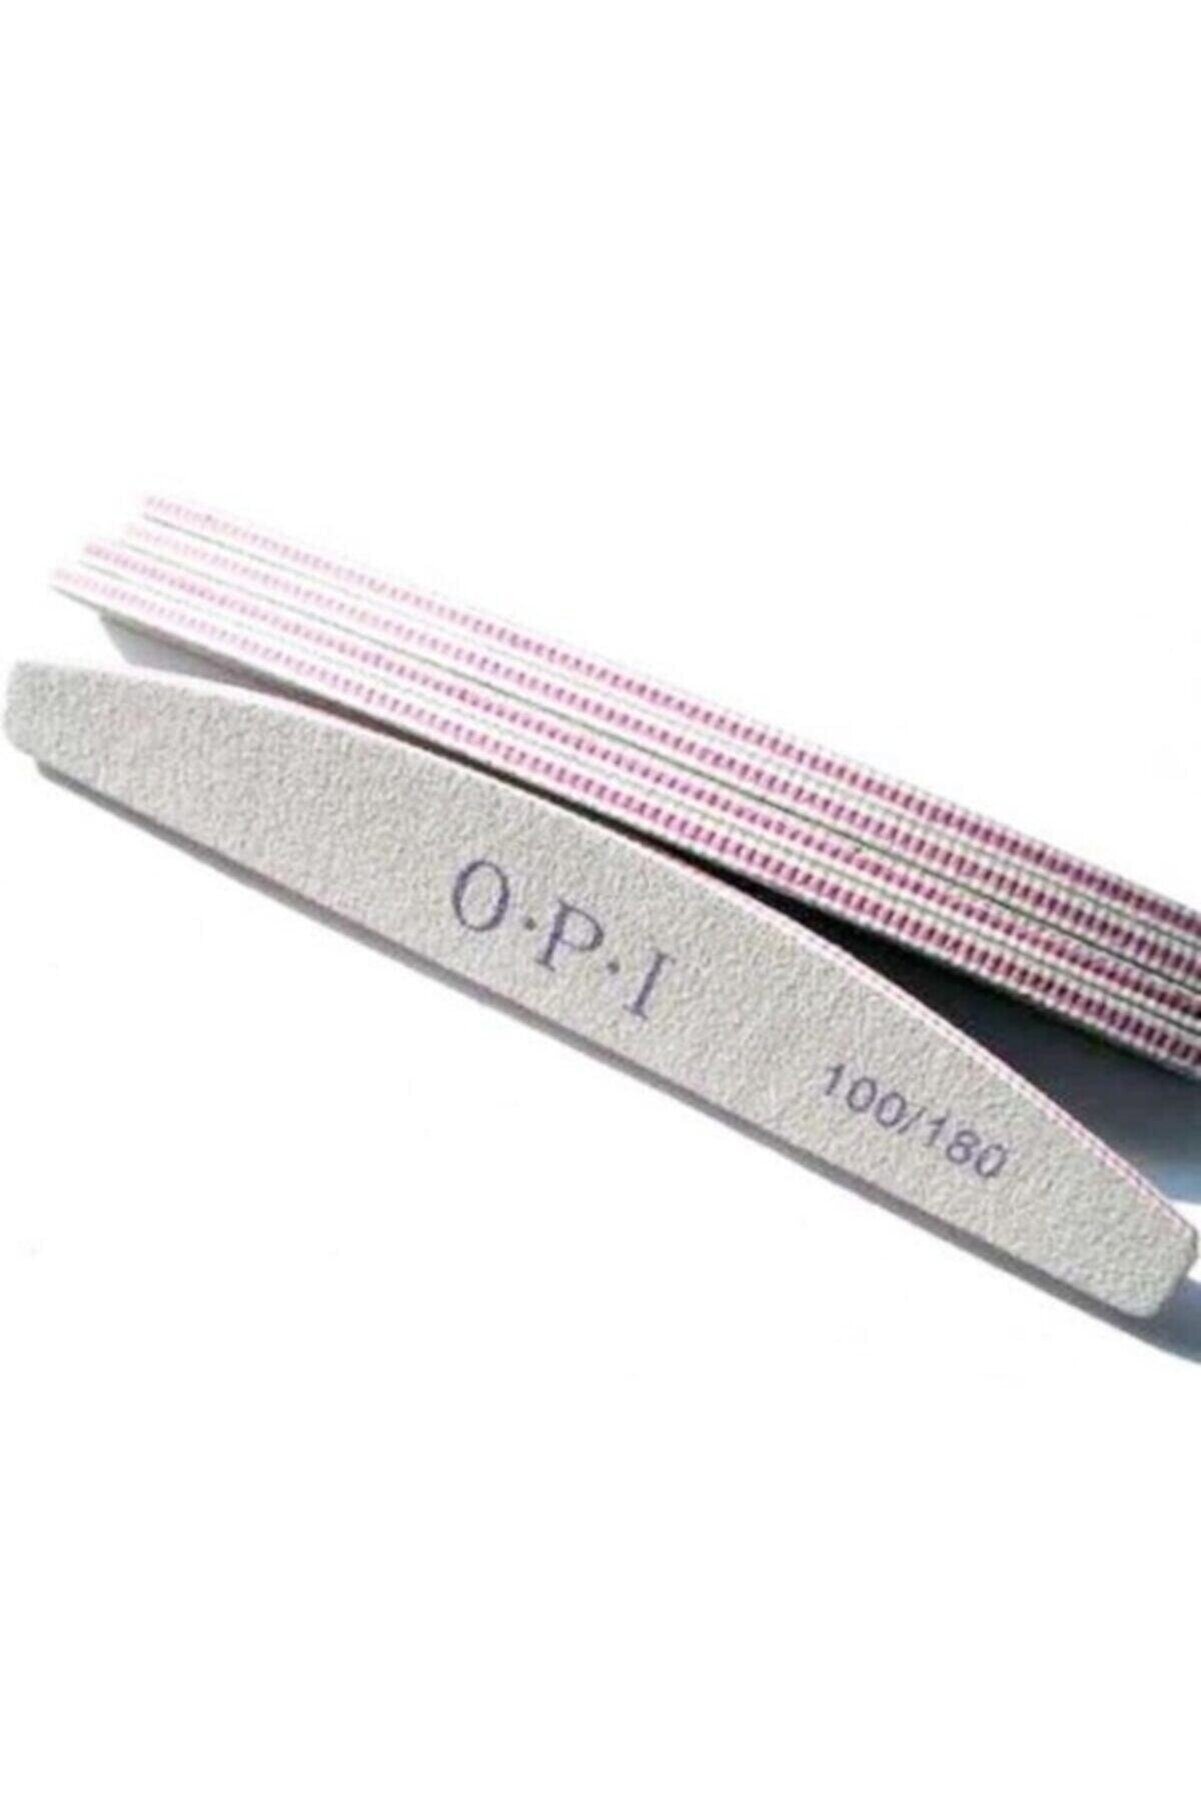 OPI Professionel Kağıt Törpü 100 180